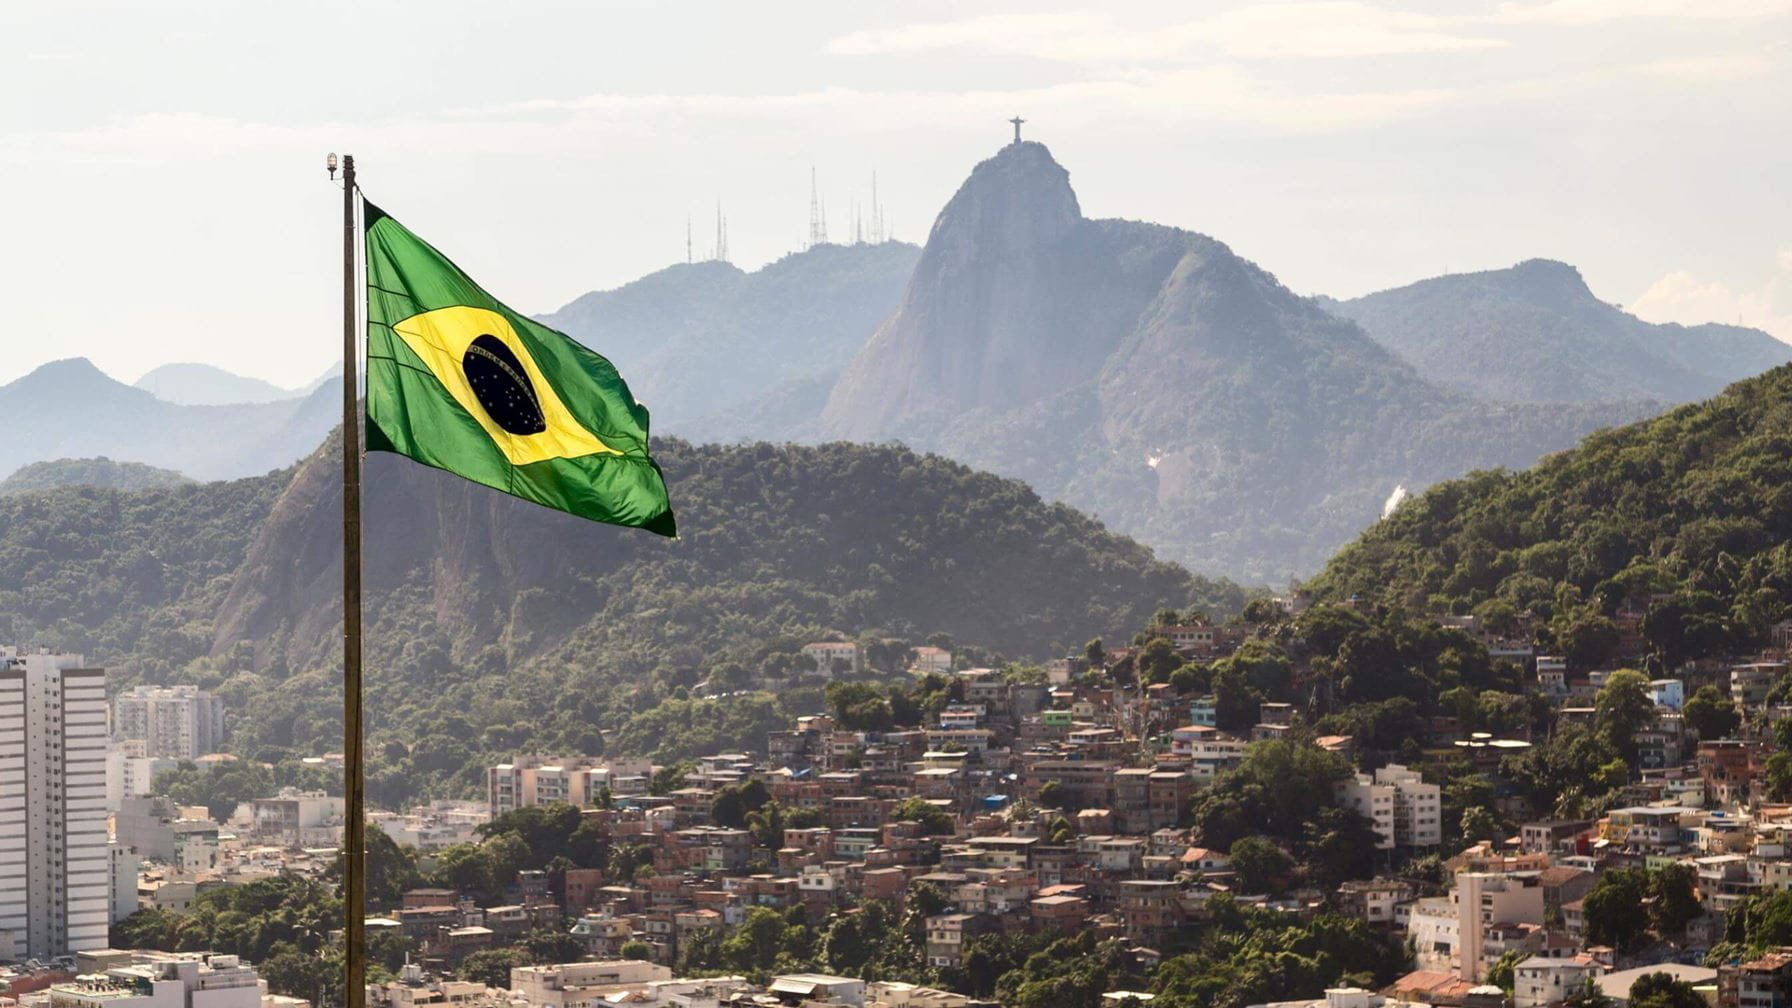 Poniendo a prueba el nuevo parque eólico de Brasil